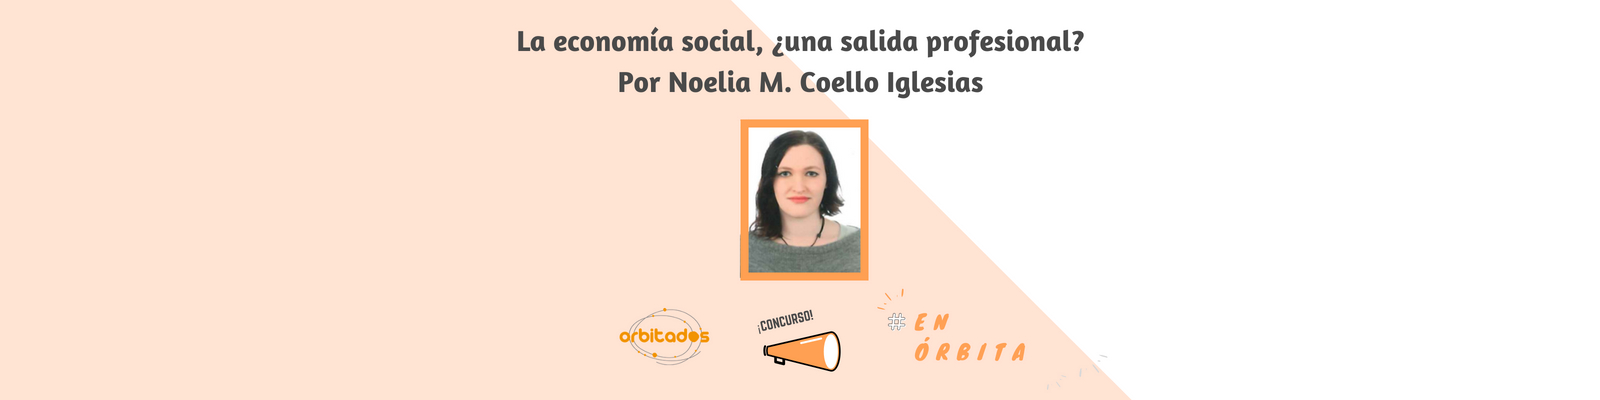 La economía social, ¿una salida profesional? Por Noelia M. Coello Iglesias